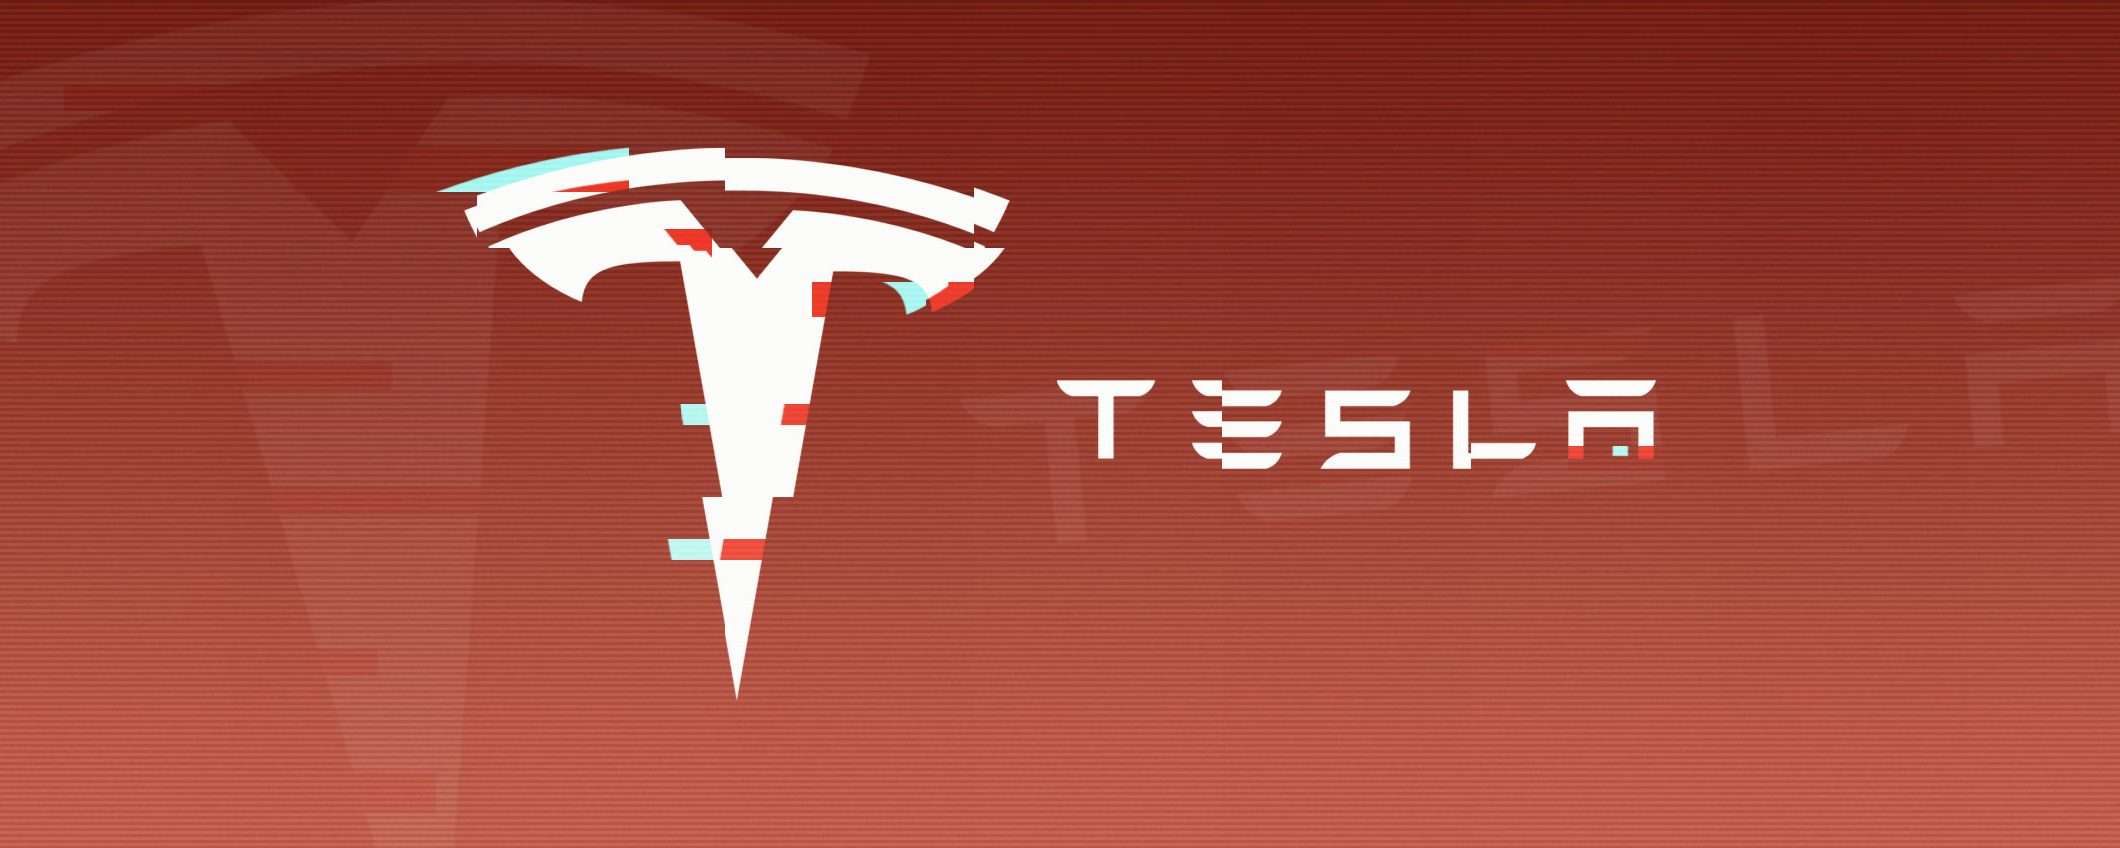 Video e meme con le registrazioni delle Tesla